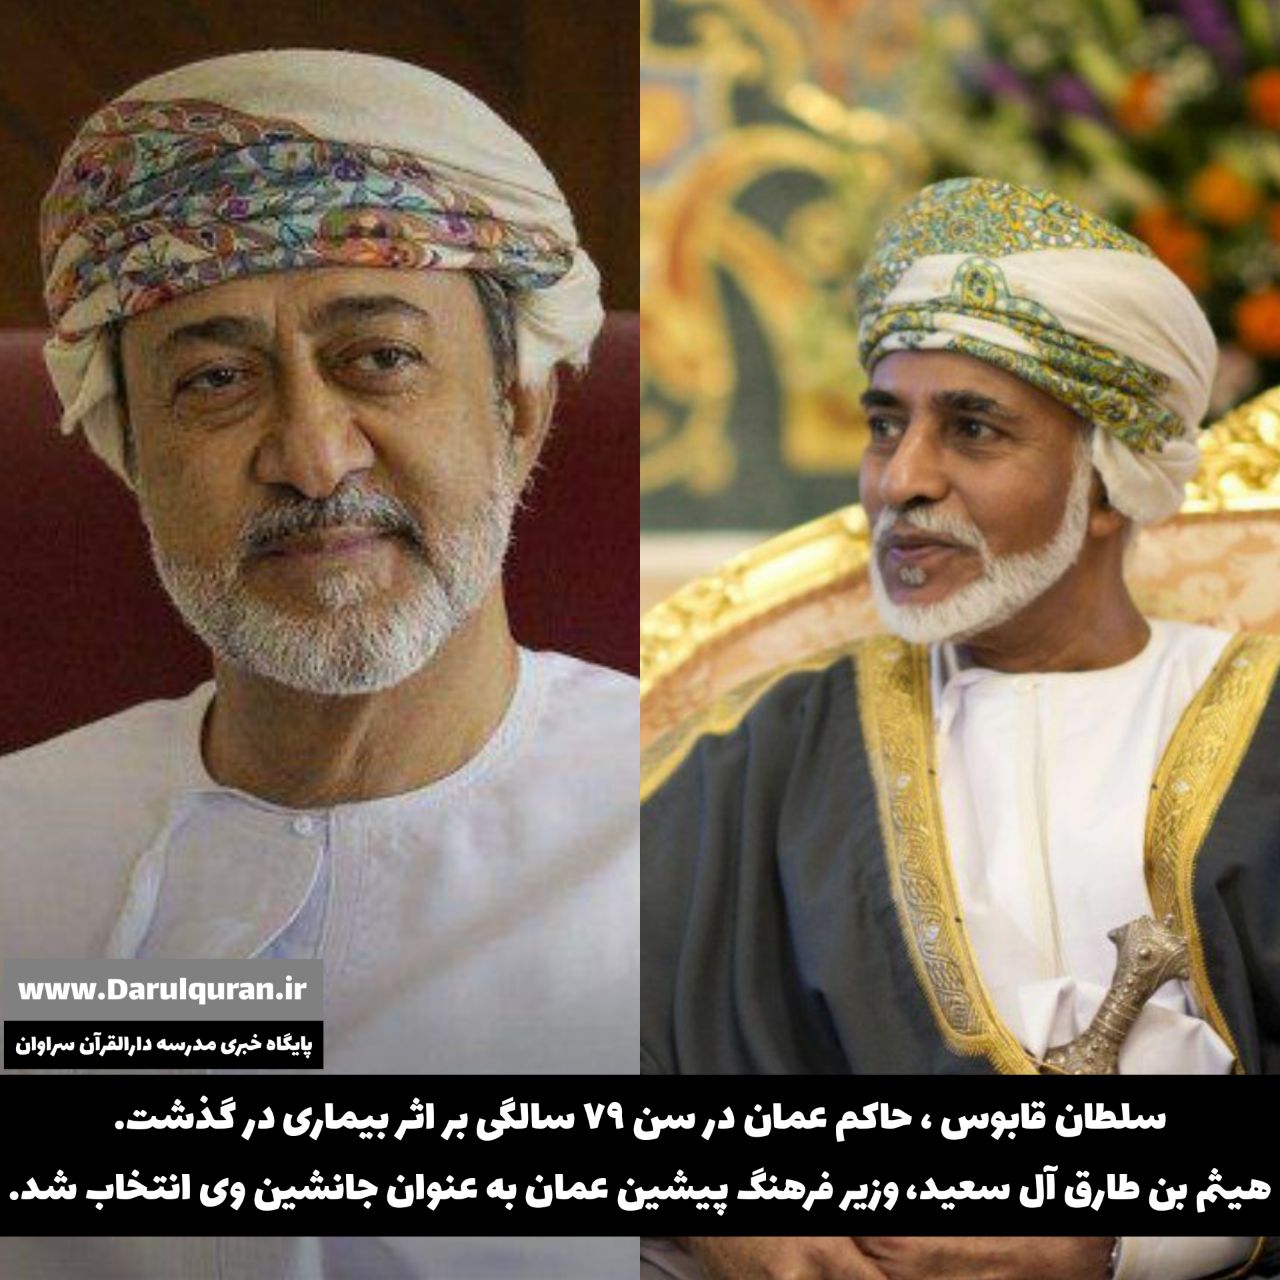 پادشاه عمان در گذشت